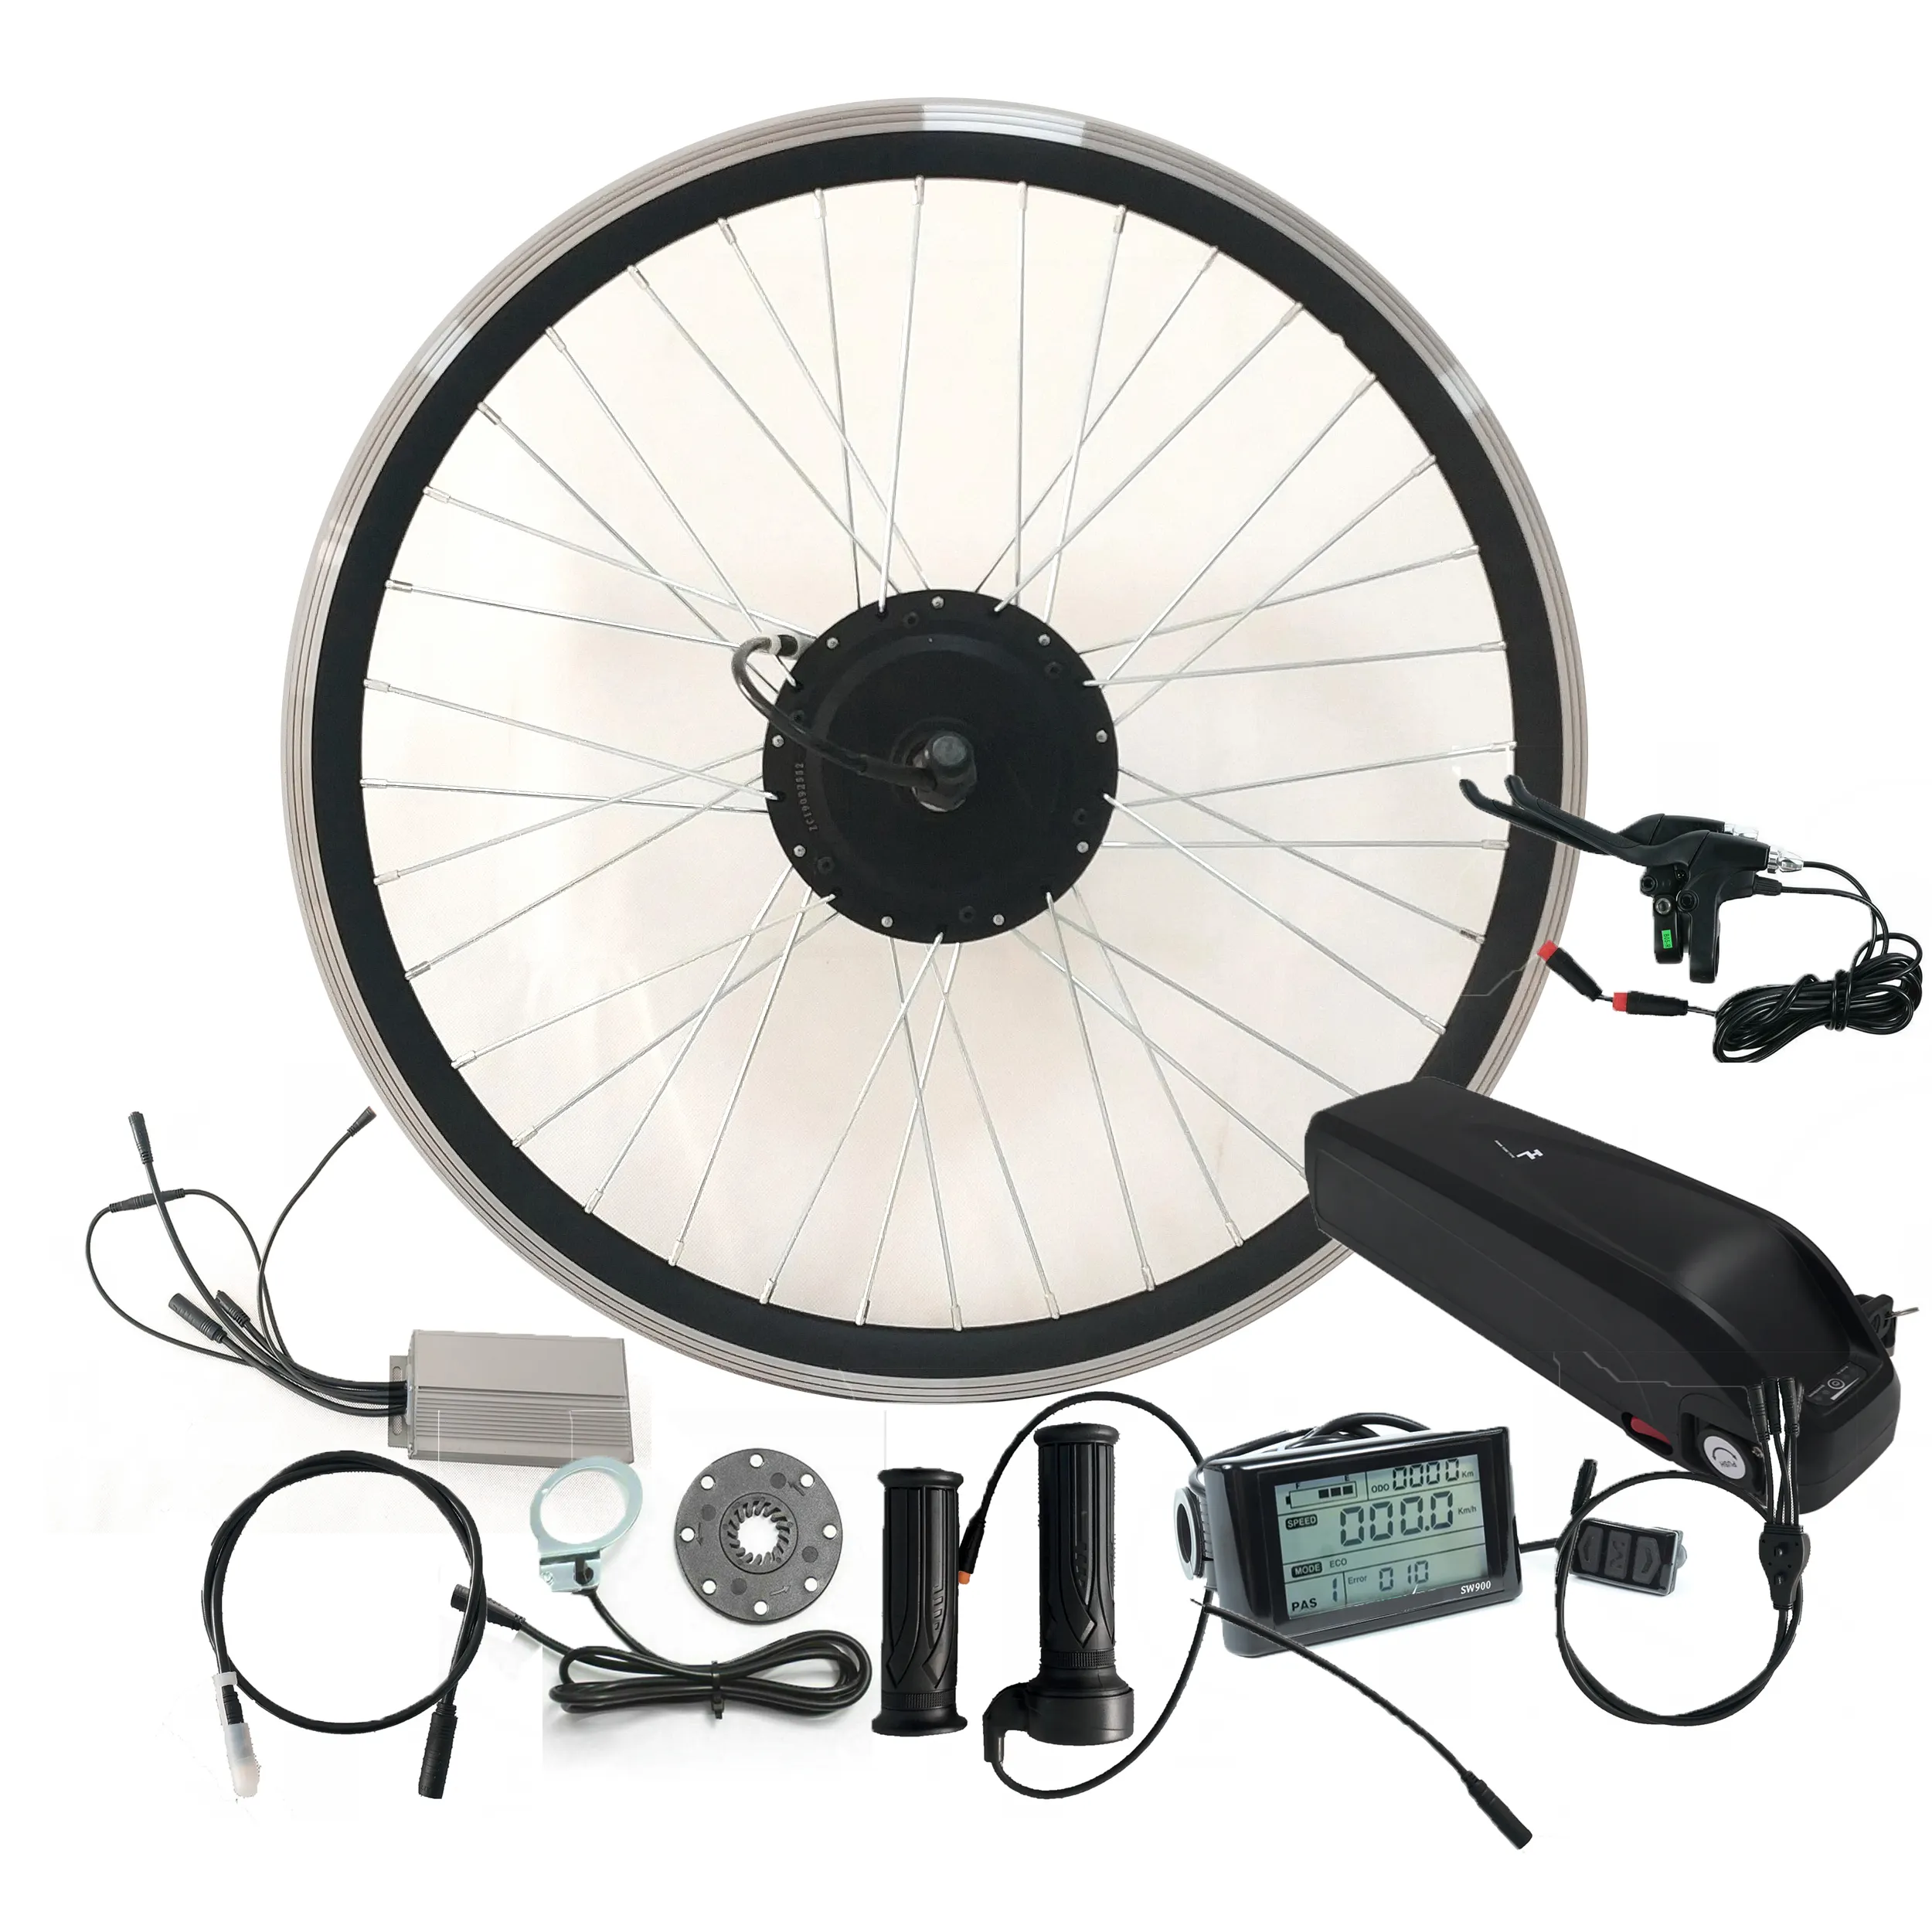 48v 1000w Ebike E Bike Cycle Bicicleta Cheap Price Assist Bike Electric Bicycle Conversion Kit